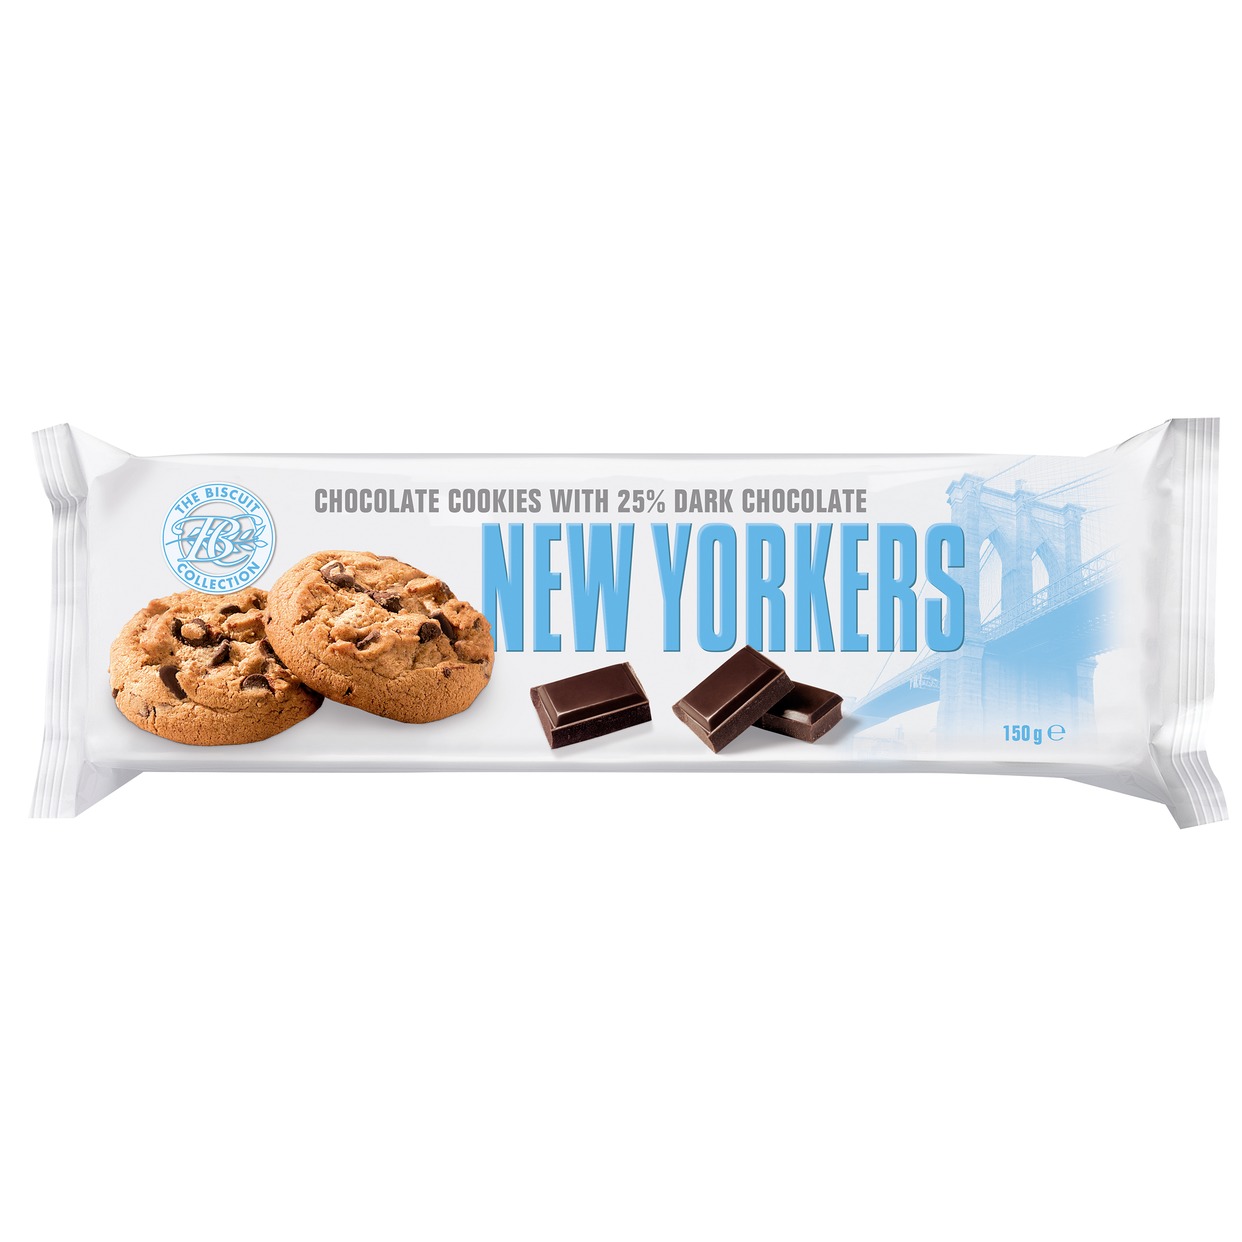 Изделие кондитерское мучное Печенье с темным шоколадом, 150г, ТМ New Yorkers по акции в Пятерочке